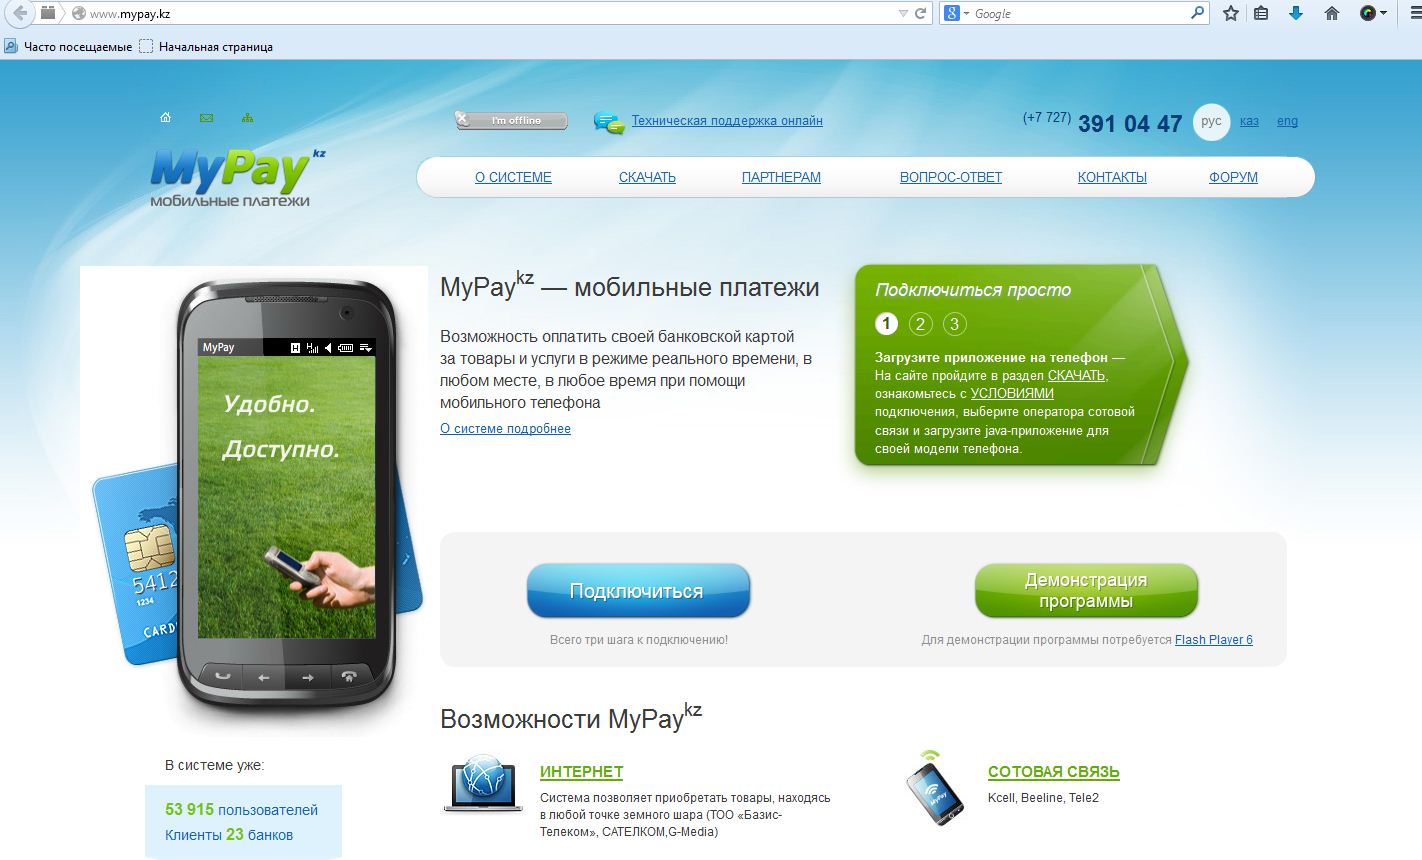 MyPay — Мобильные платежи